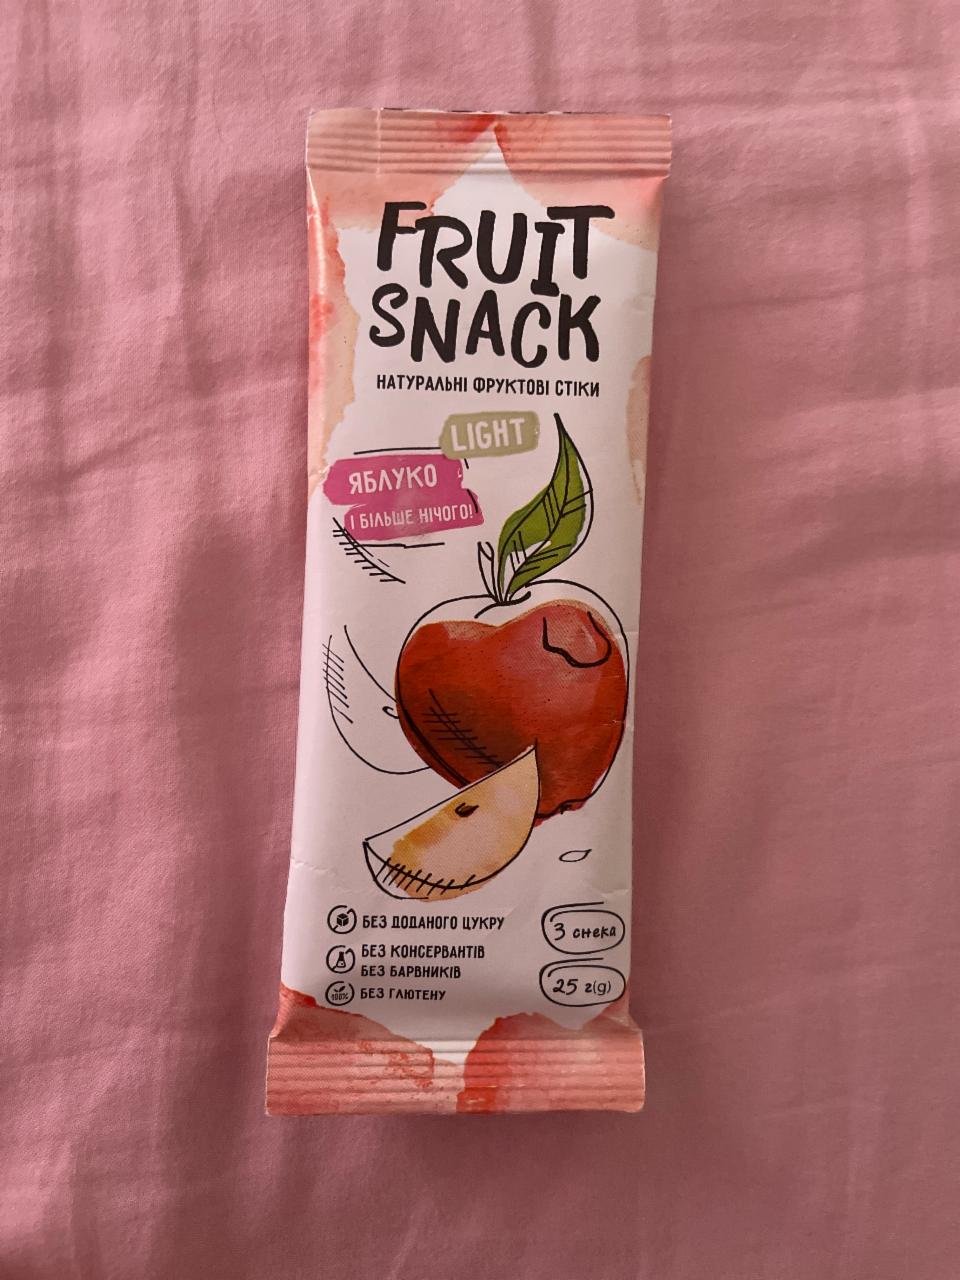 Фото - Стики натуральные фруктовые Яблоко без сахара Fruit Snack